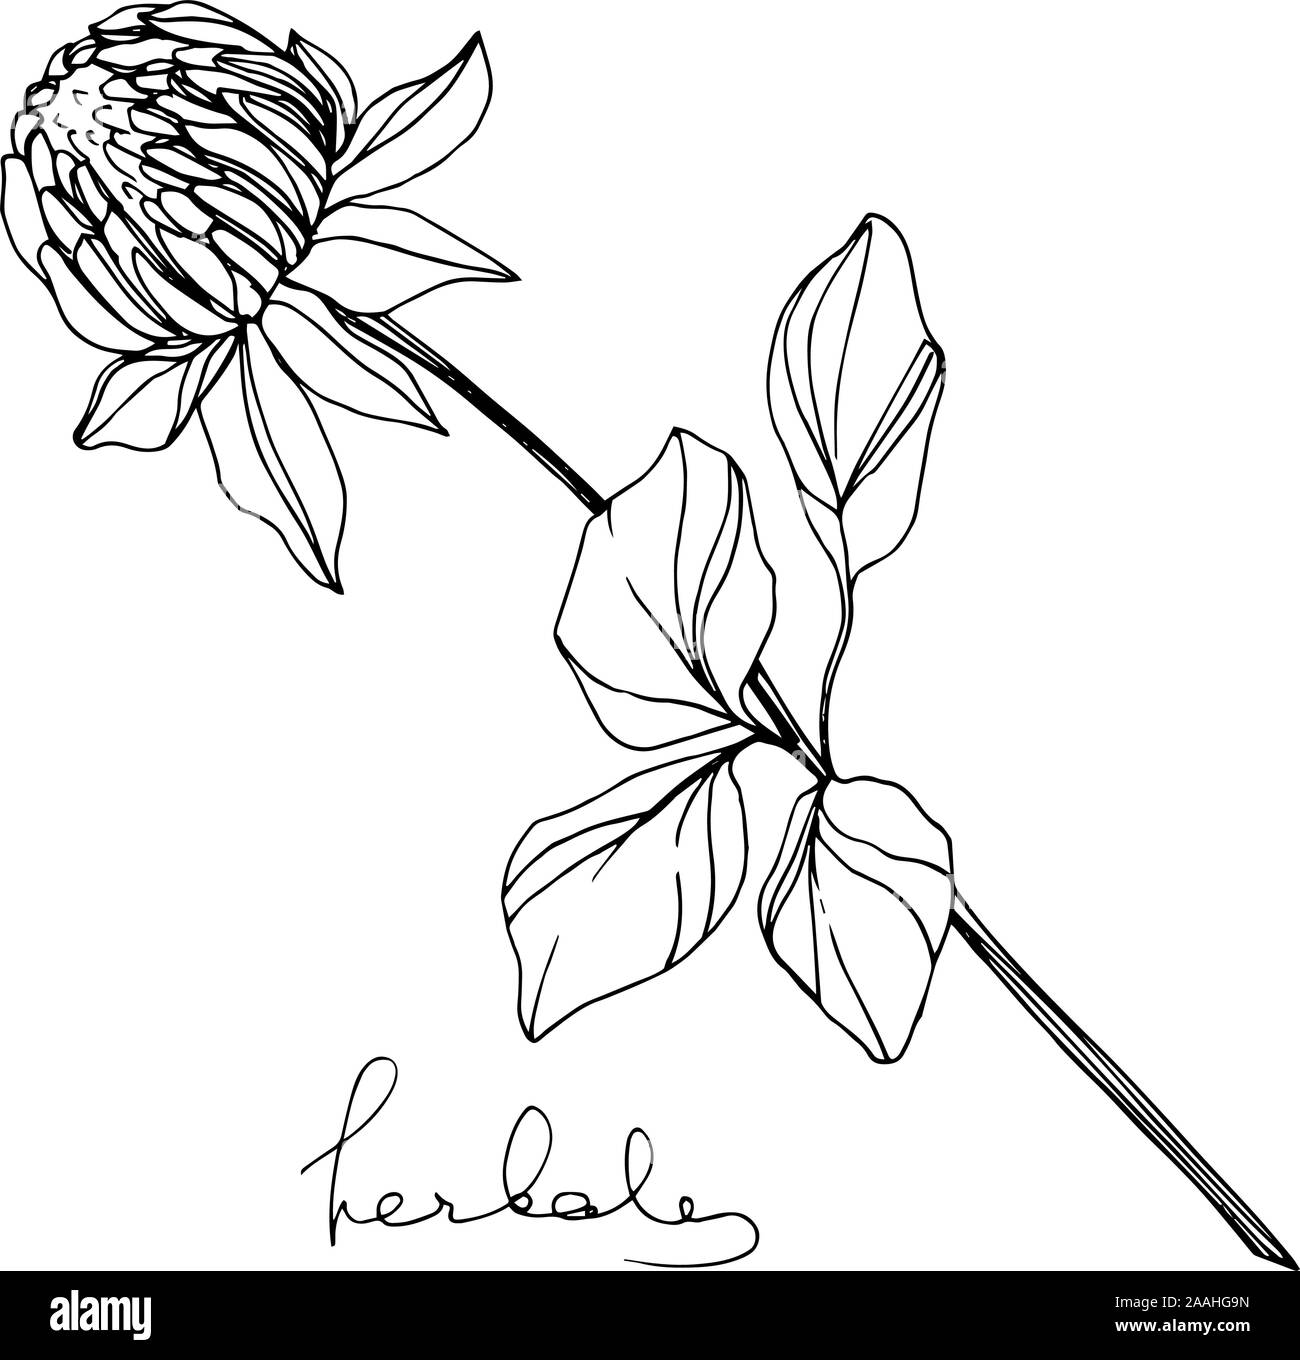 Vektor Pflanzliche floral Laub. Schwarz und weiß eingraviert Tinte Art isoliert pflanzliche Abbildung Element. Stock Vektor